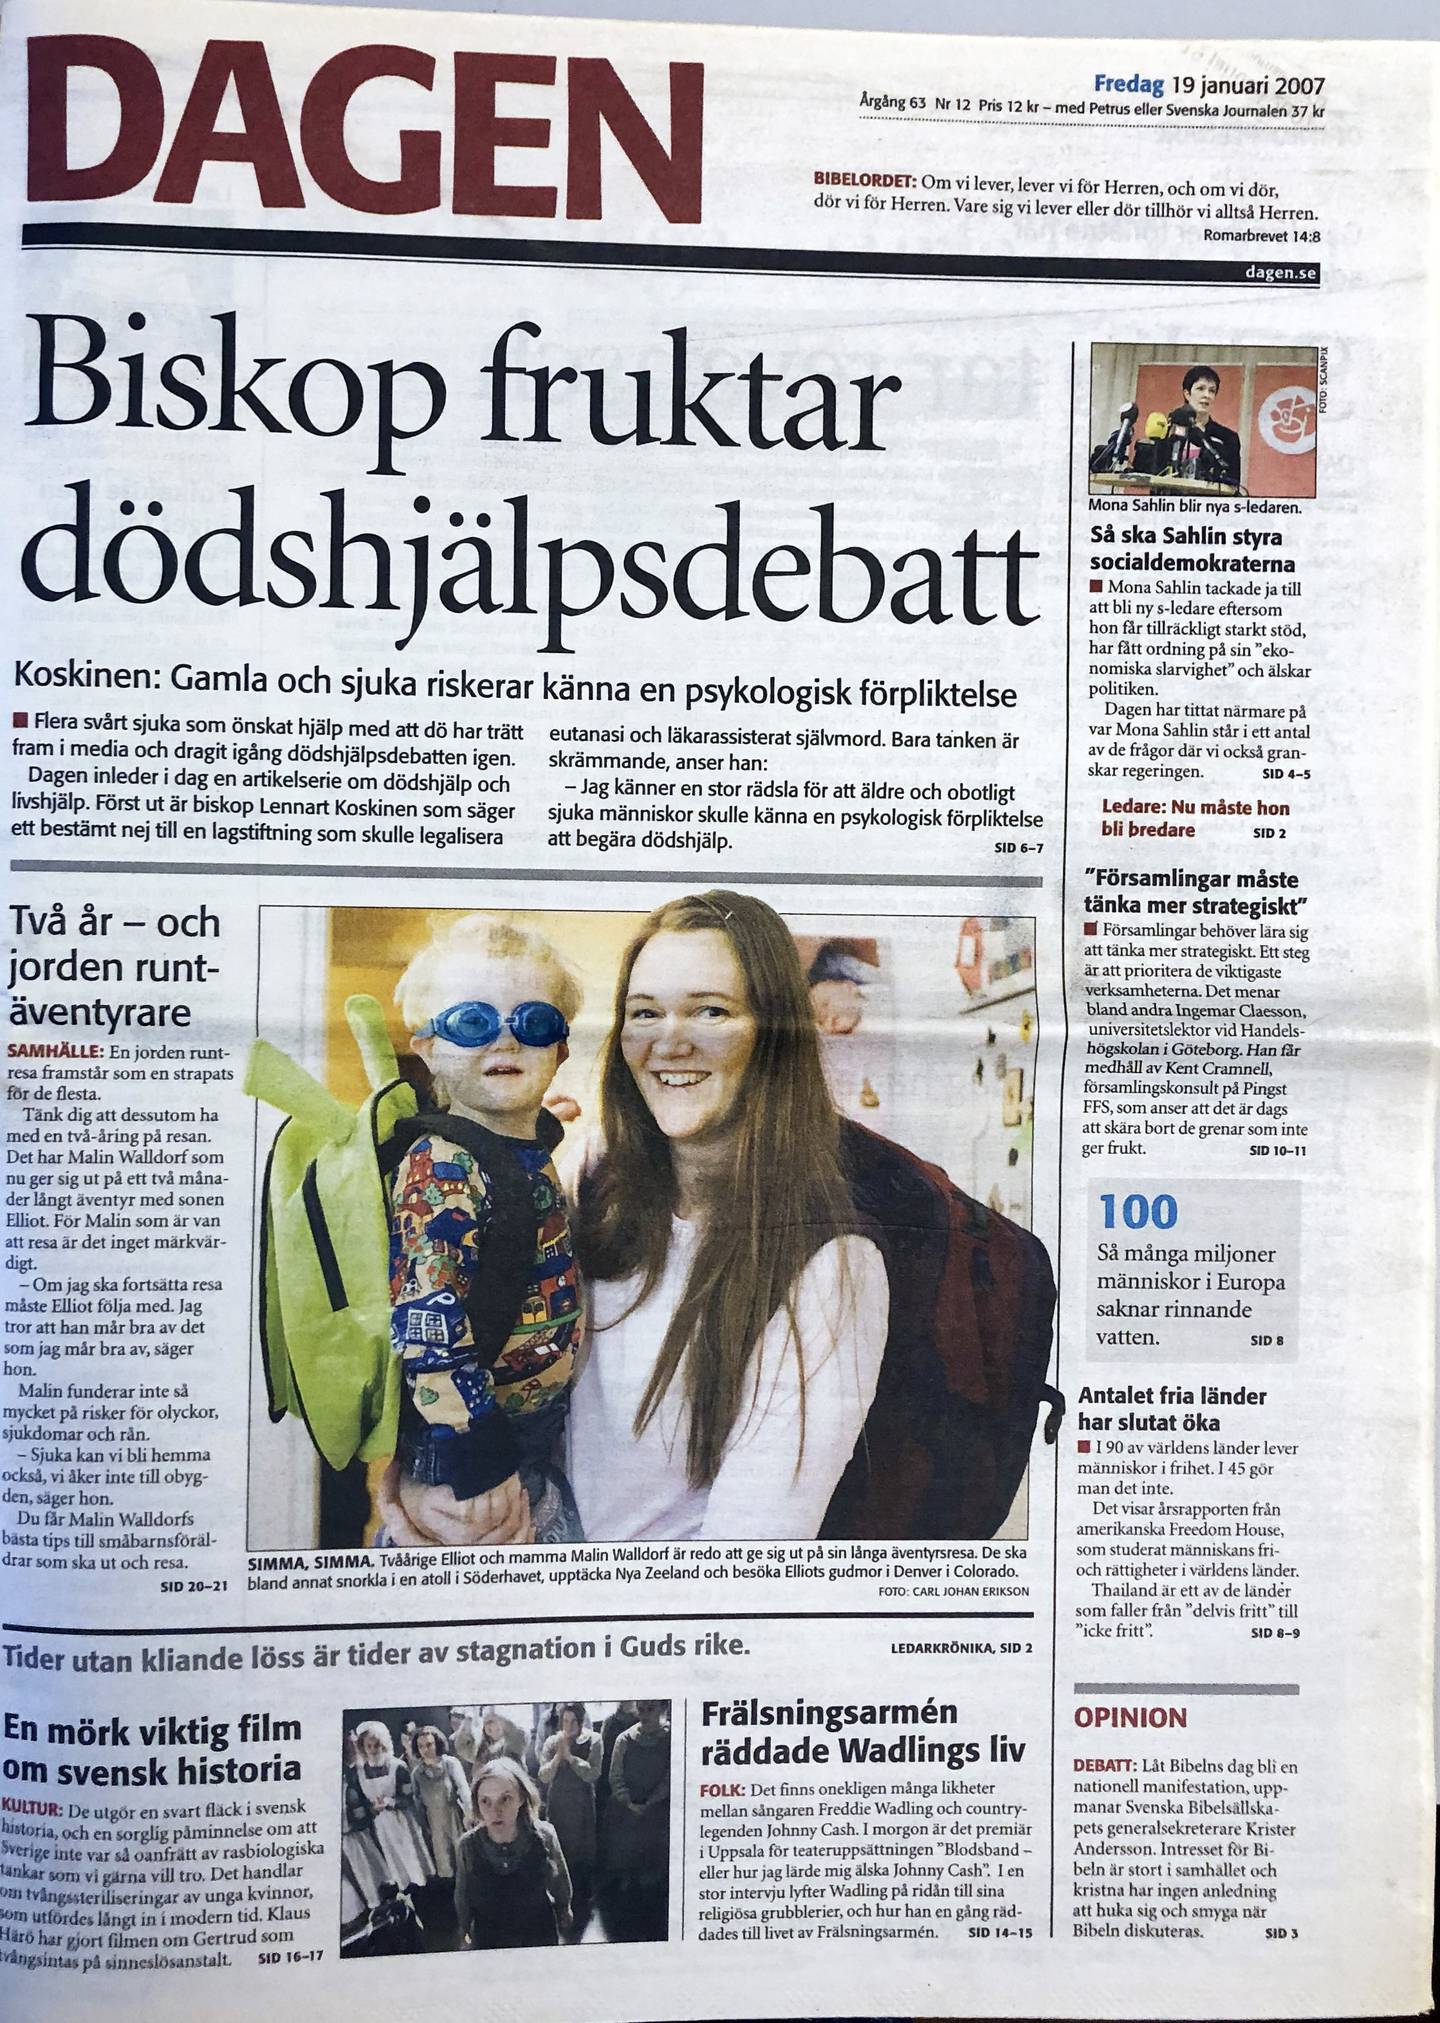 Förstasida tidningen Dagen, 19 januari 2007.